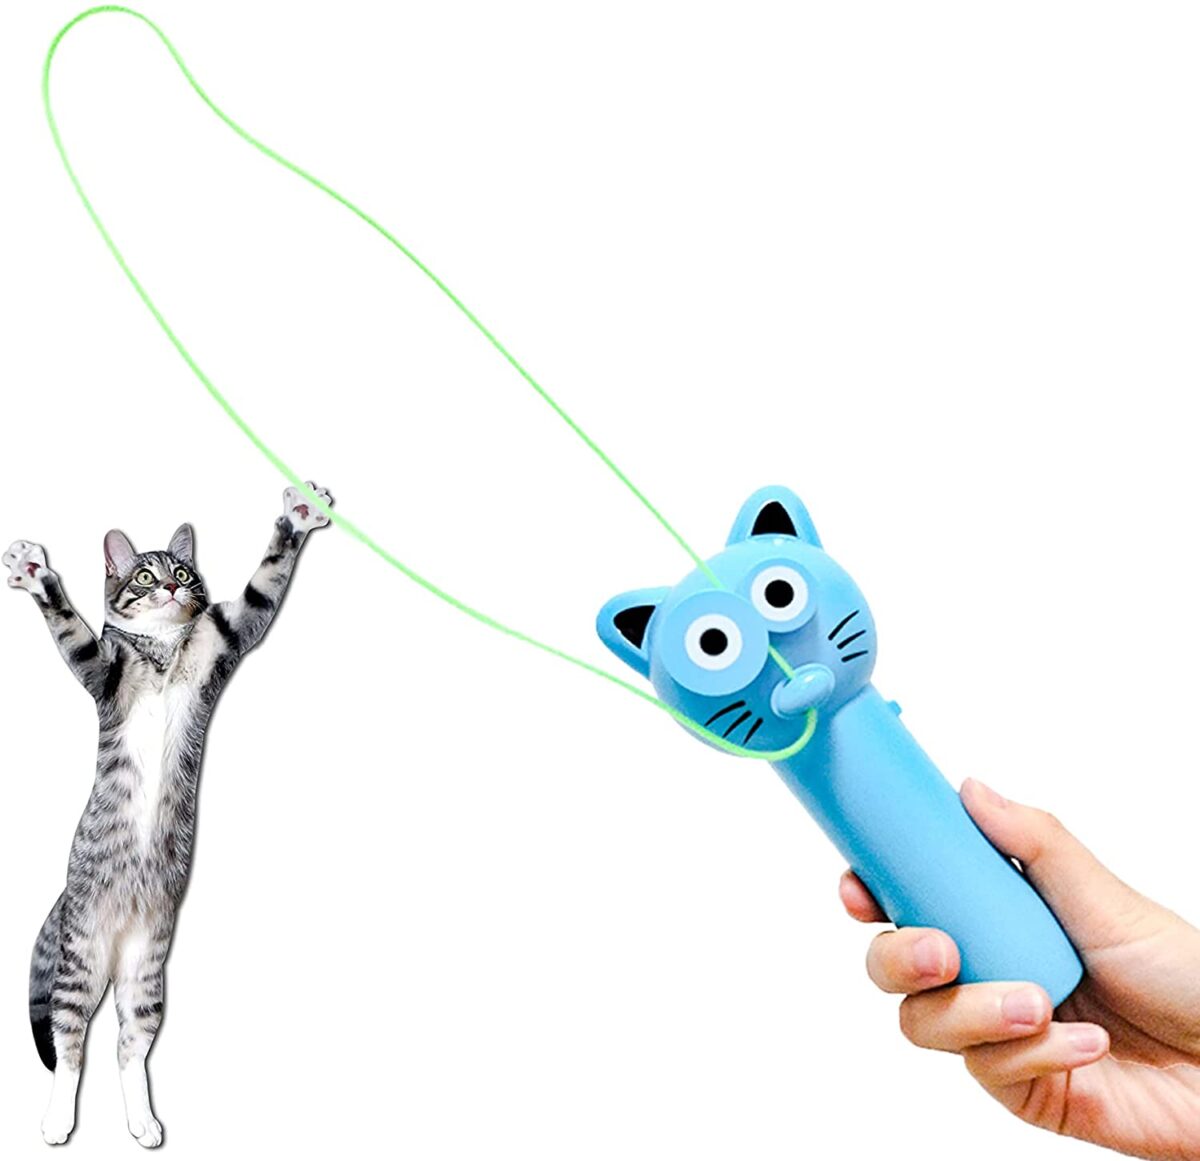 دستگاه بند انداز ربه بازی با گربه